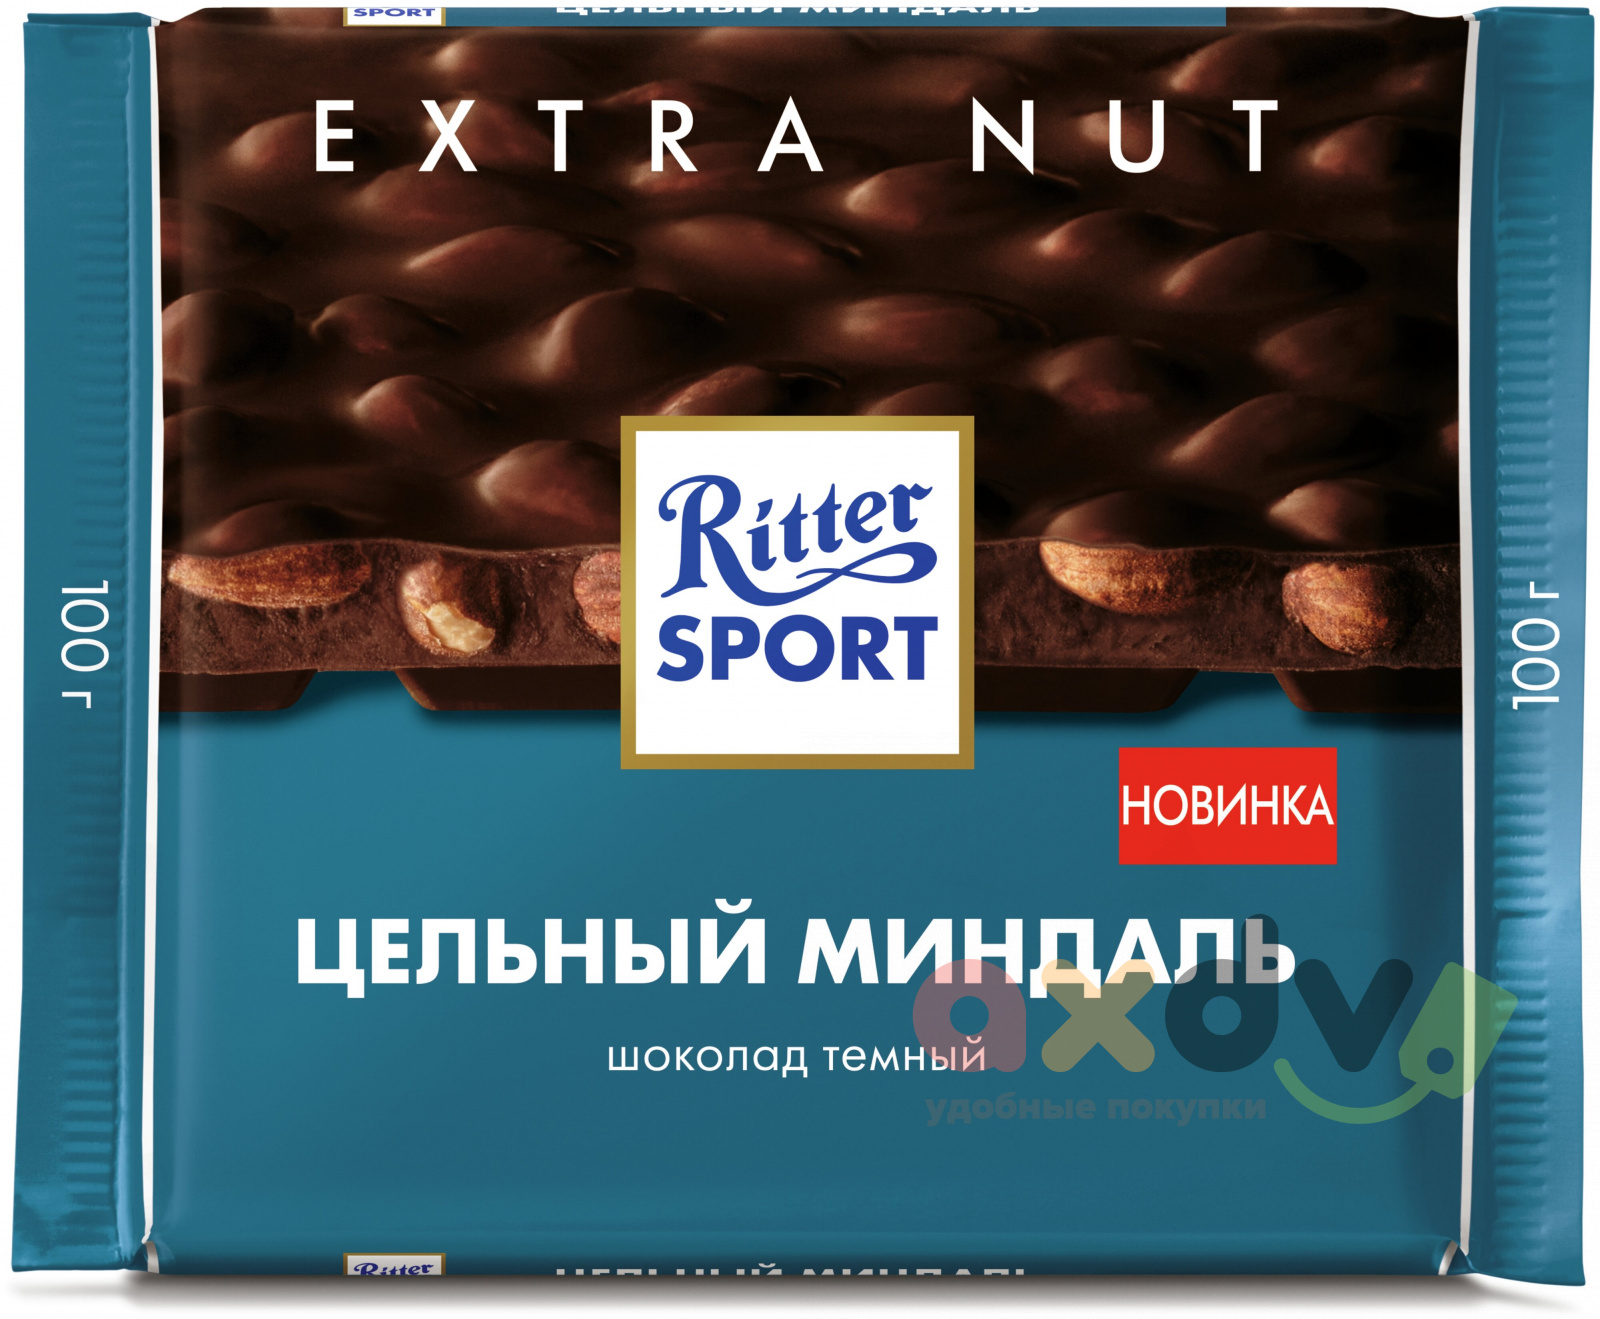 Шоколадка с цельным. Шоколад Ritter Sport Extra nut. Шоколад Ritter Sport 100гр цельный миндаль темный. Риттер спорт темный с миндалем. Риттер спорт шоколад темный с миндалем.